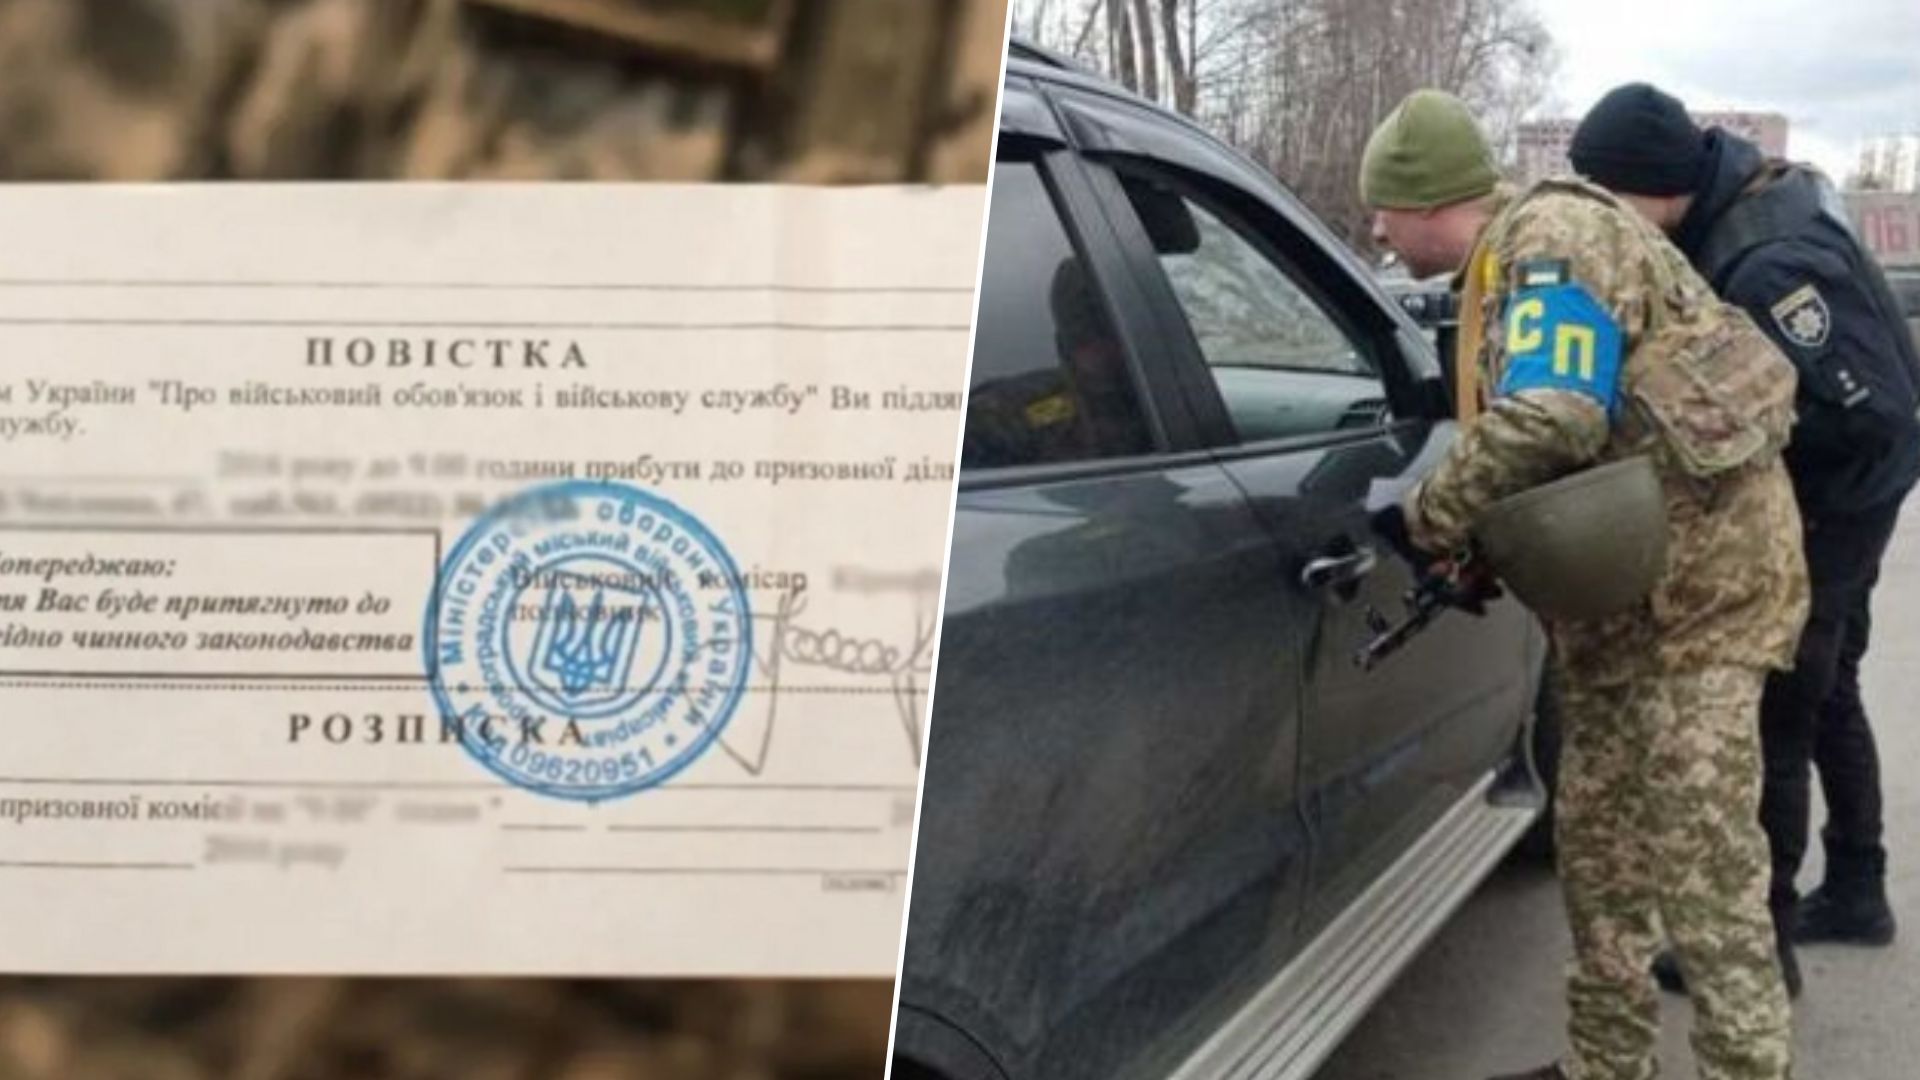 Юрист рассказала, могут ли в Украине остановить авто для вручения повестки